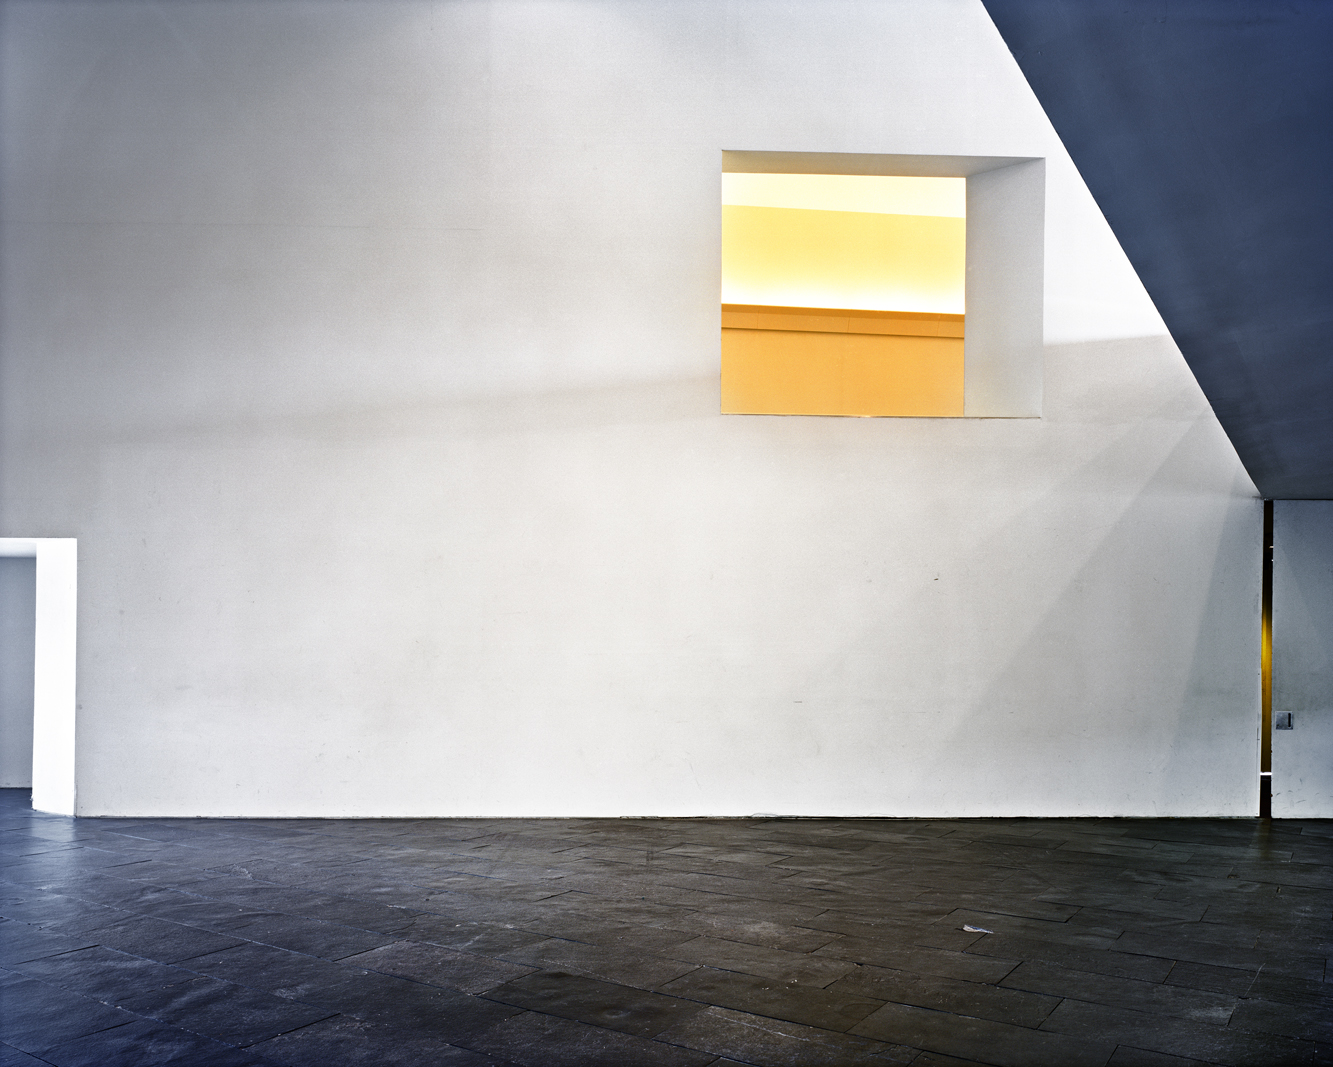 Untitled (Diebenkorn Yellow Window), 2008